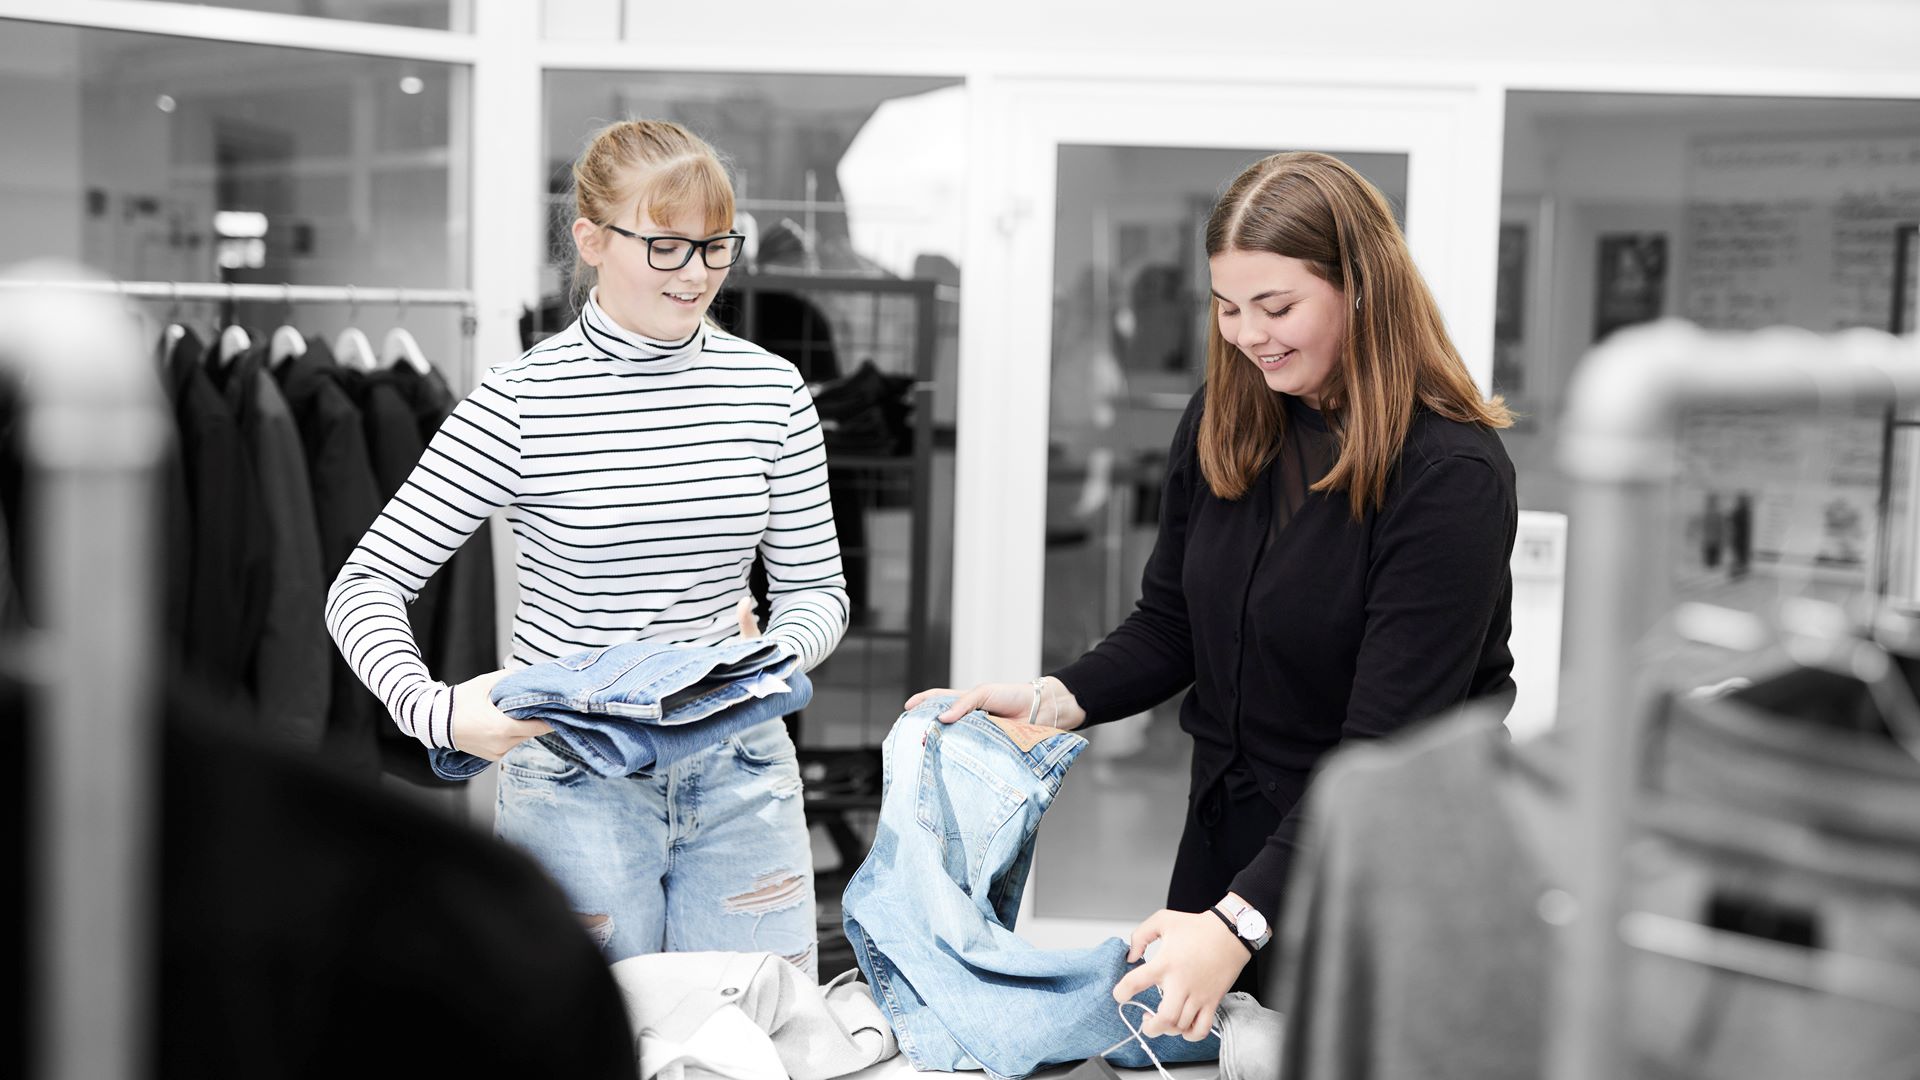 ZBC besøgsdage i Ringsted - salgsassistenter ordner tøj i butik